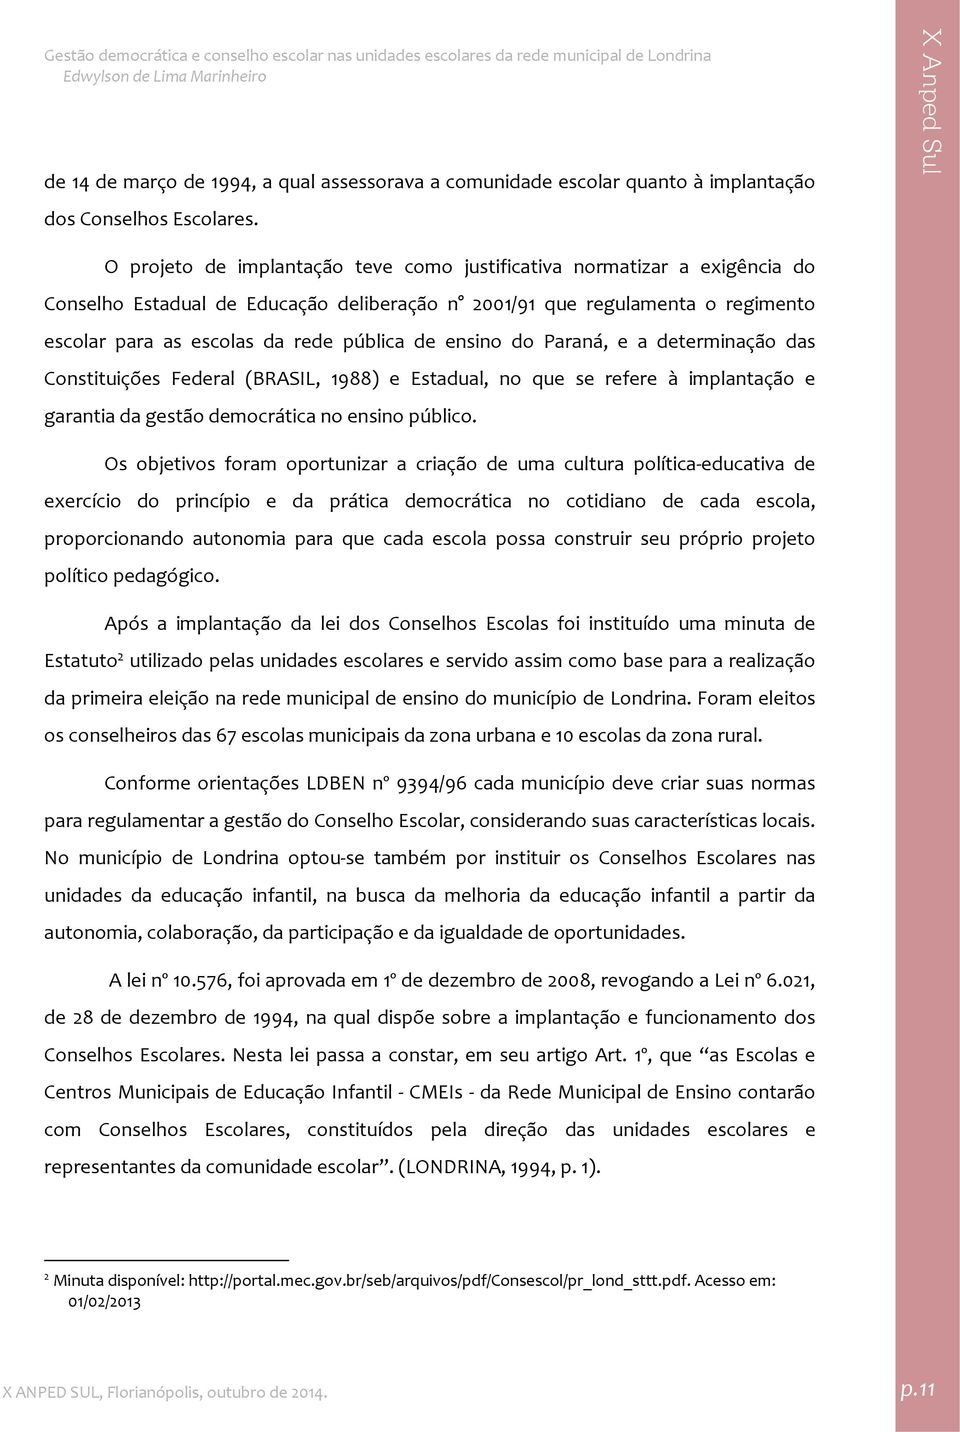 ensino do Paraná, e a determinação das Constituições Federal (BRASIL, 1988) e Estadual, no que se refere à implantação e garantia da gestão democrática no ensino público.